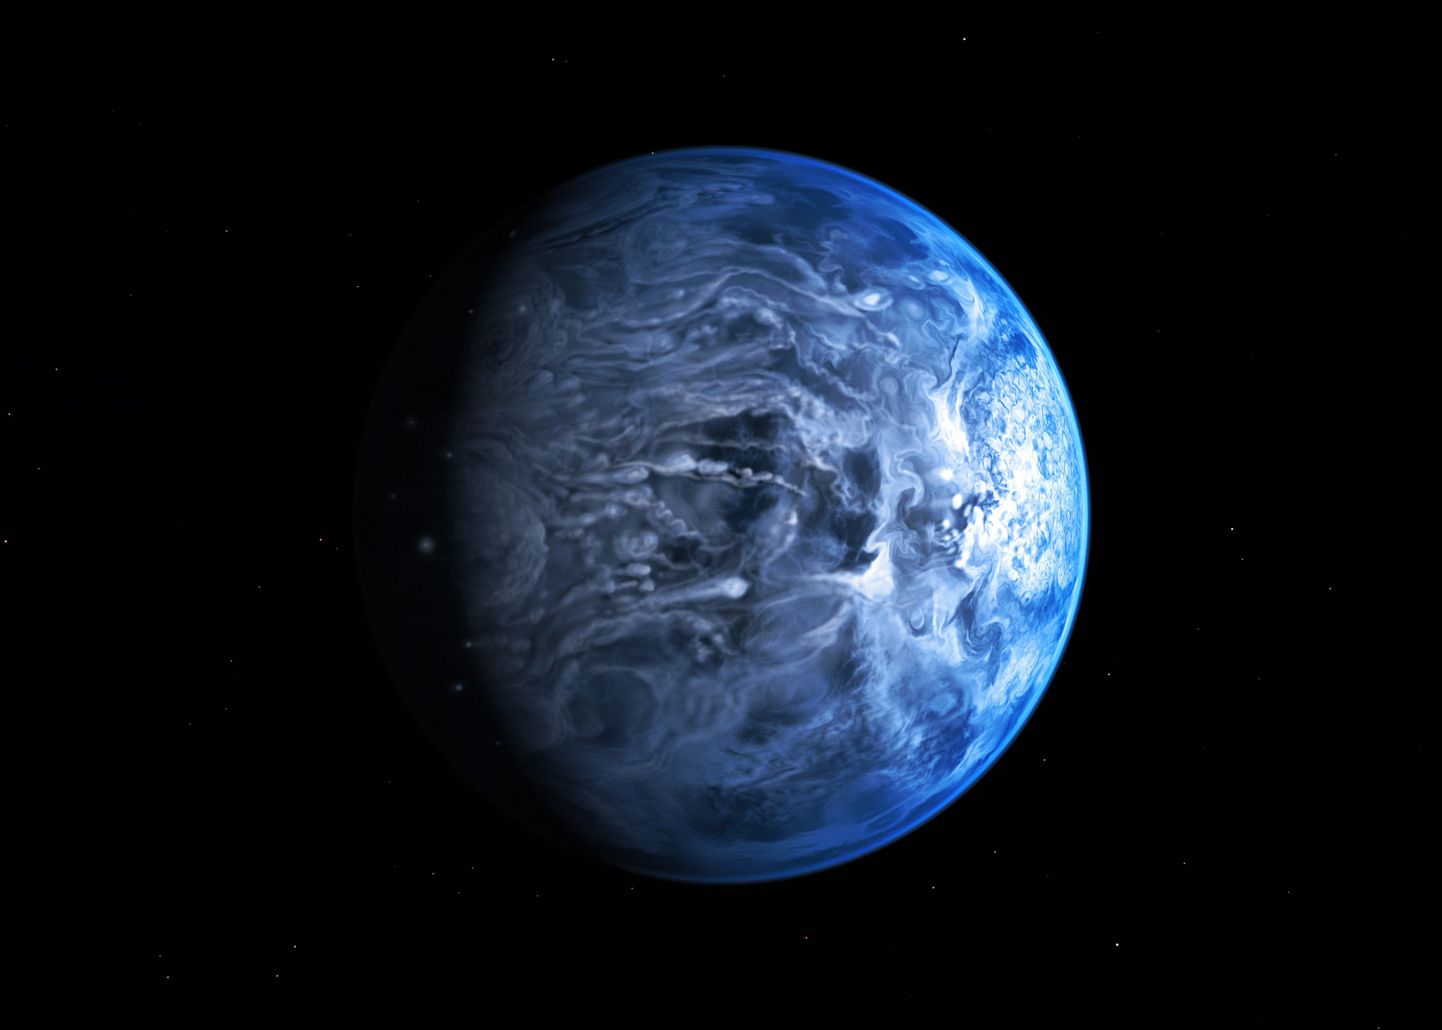 Kunstniku nägemus planeedist HD 189733b, kus sajab vedelat klaasi